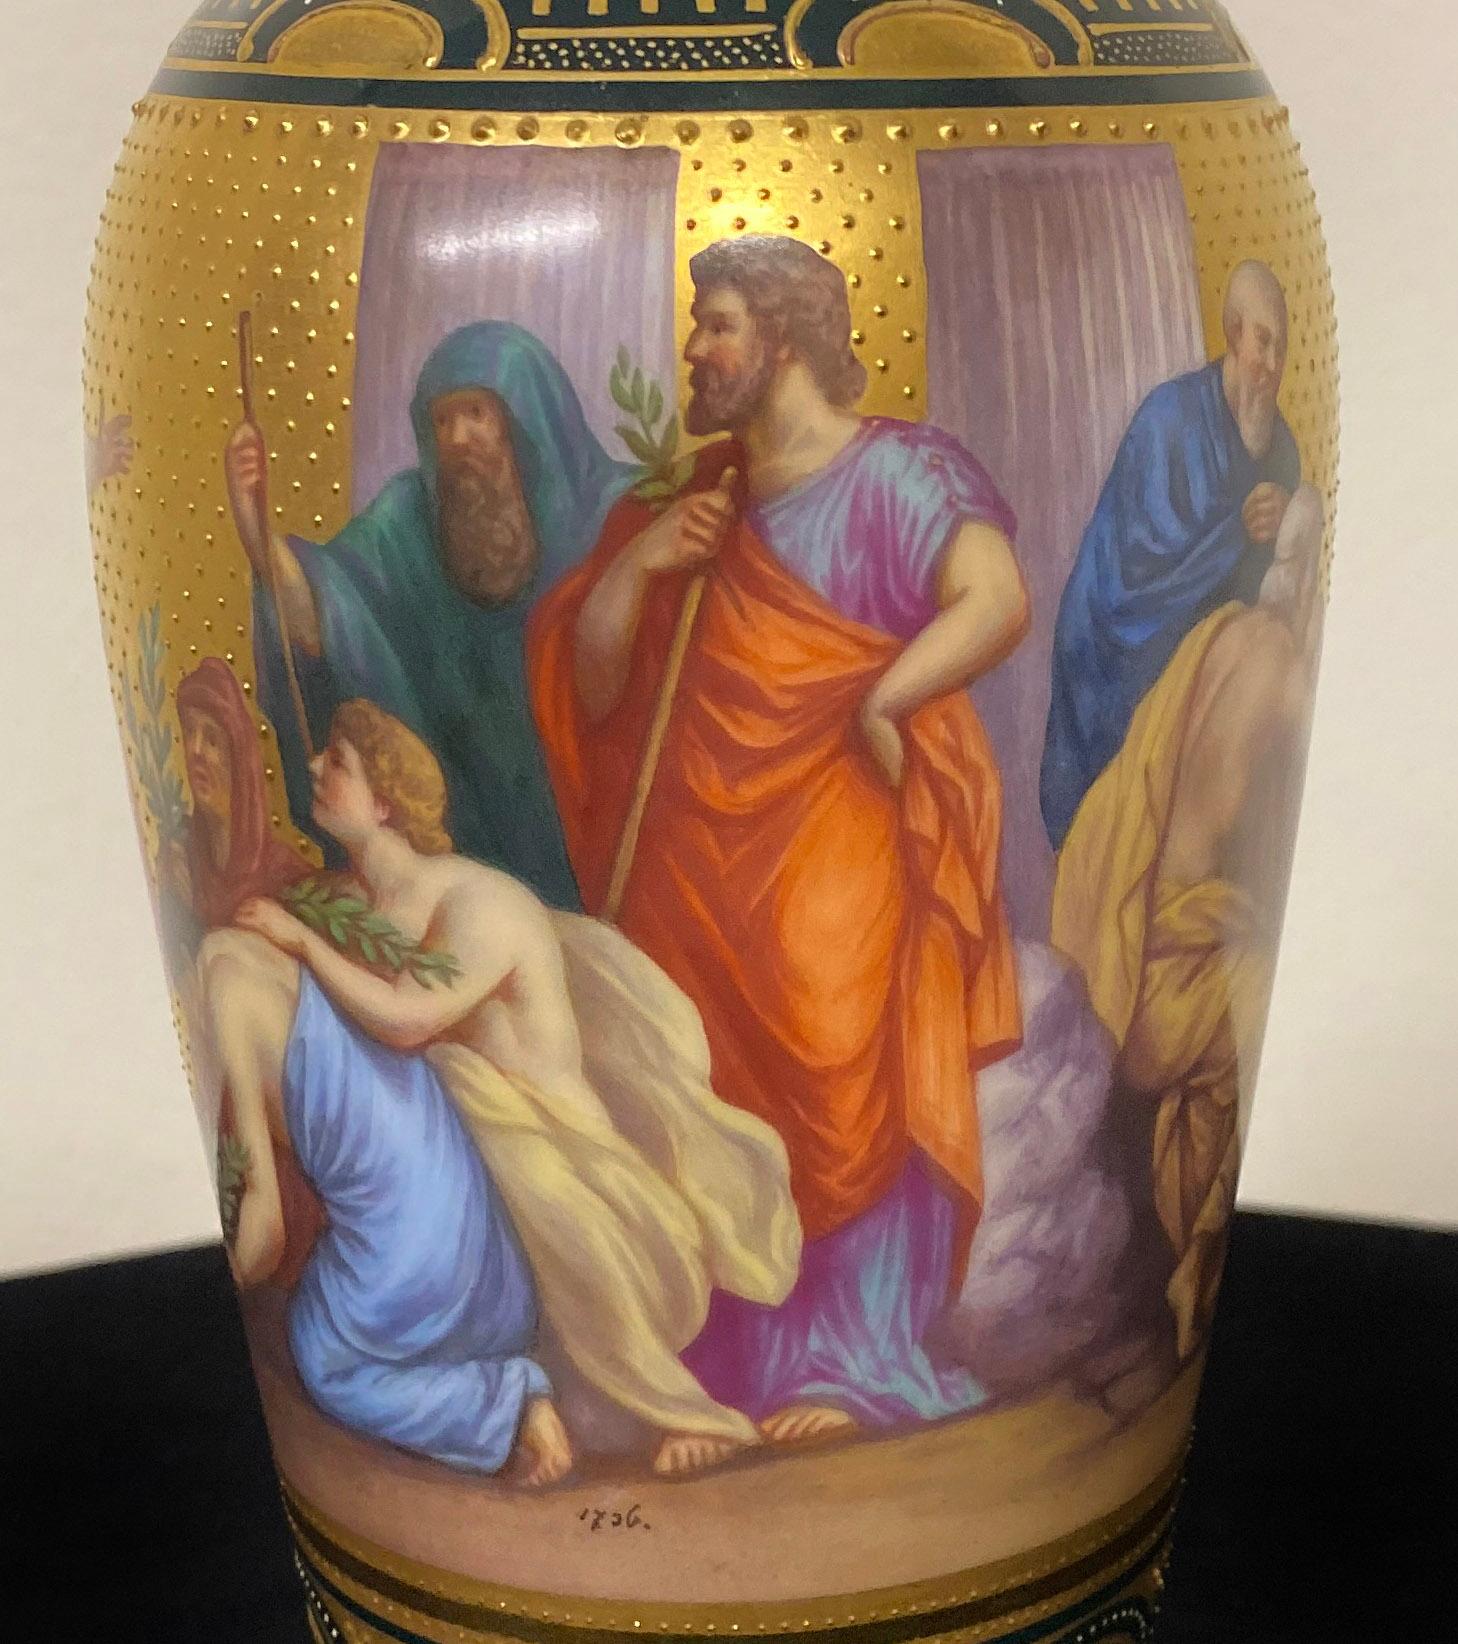 Magnifique vase et couvercle en porcelaine royale de Vienne de la fin du XIXe siècle représentant Apollon

Le vase verdâtre est peint de figures d'Apollon entourées de plusieurs de ses disciples, avec des motifs dorés en relief sur le haut et le